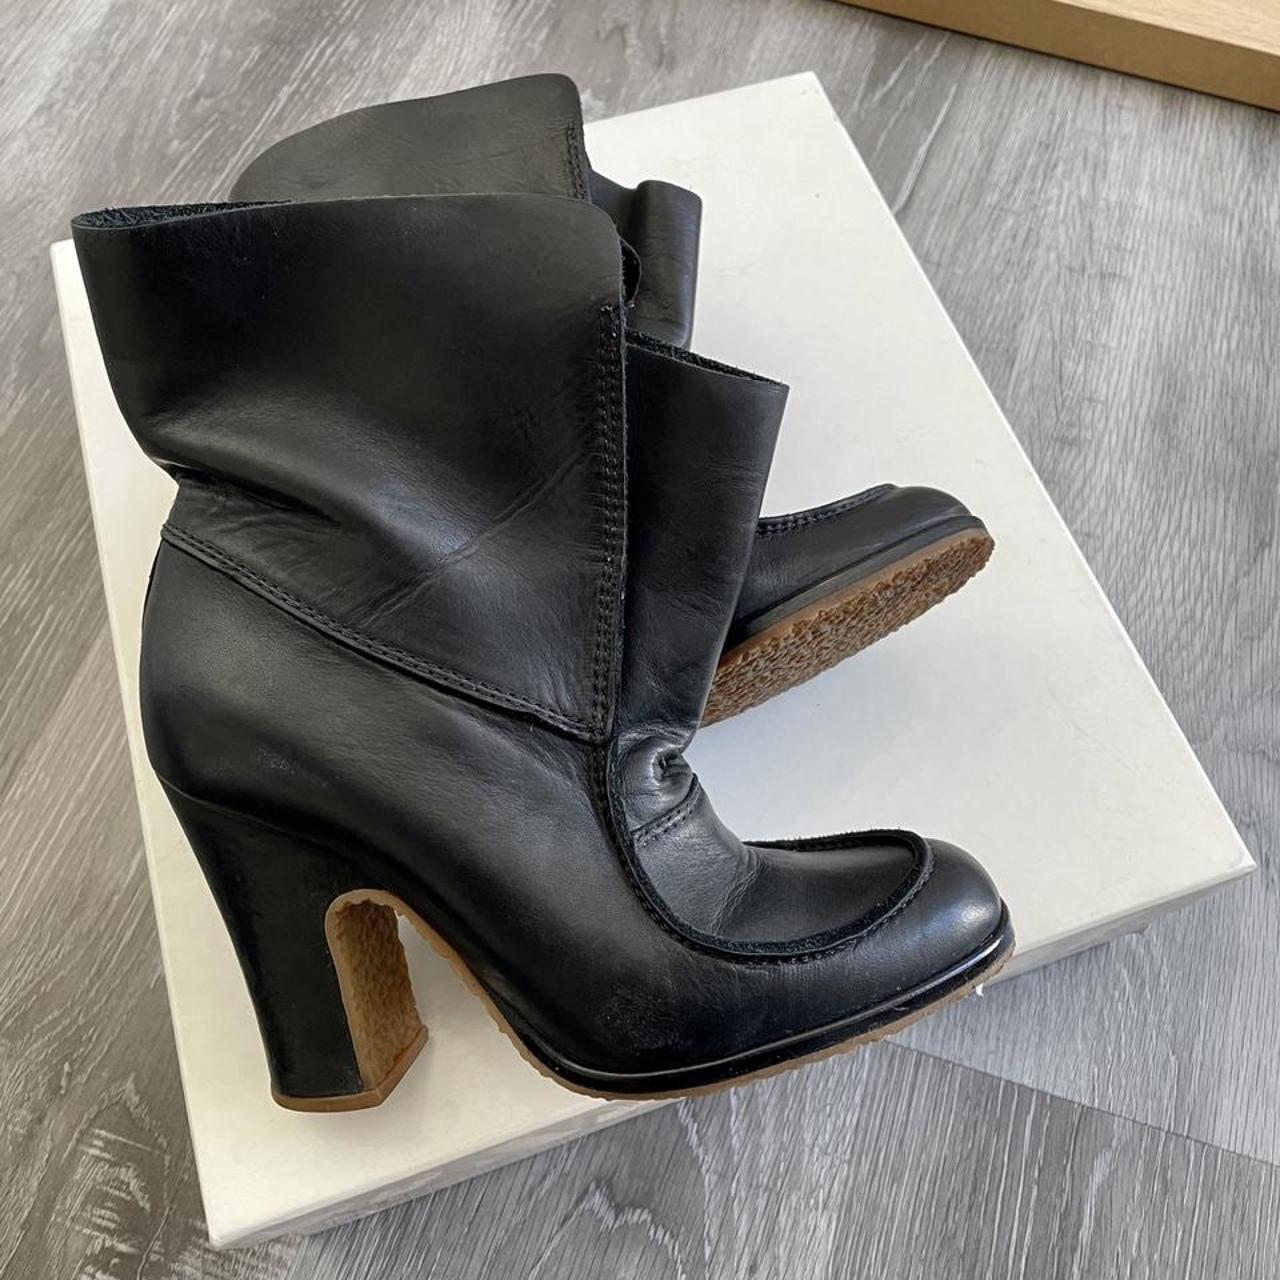 Product Image 2 - Maison Margiela Black Leather Boots

*size